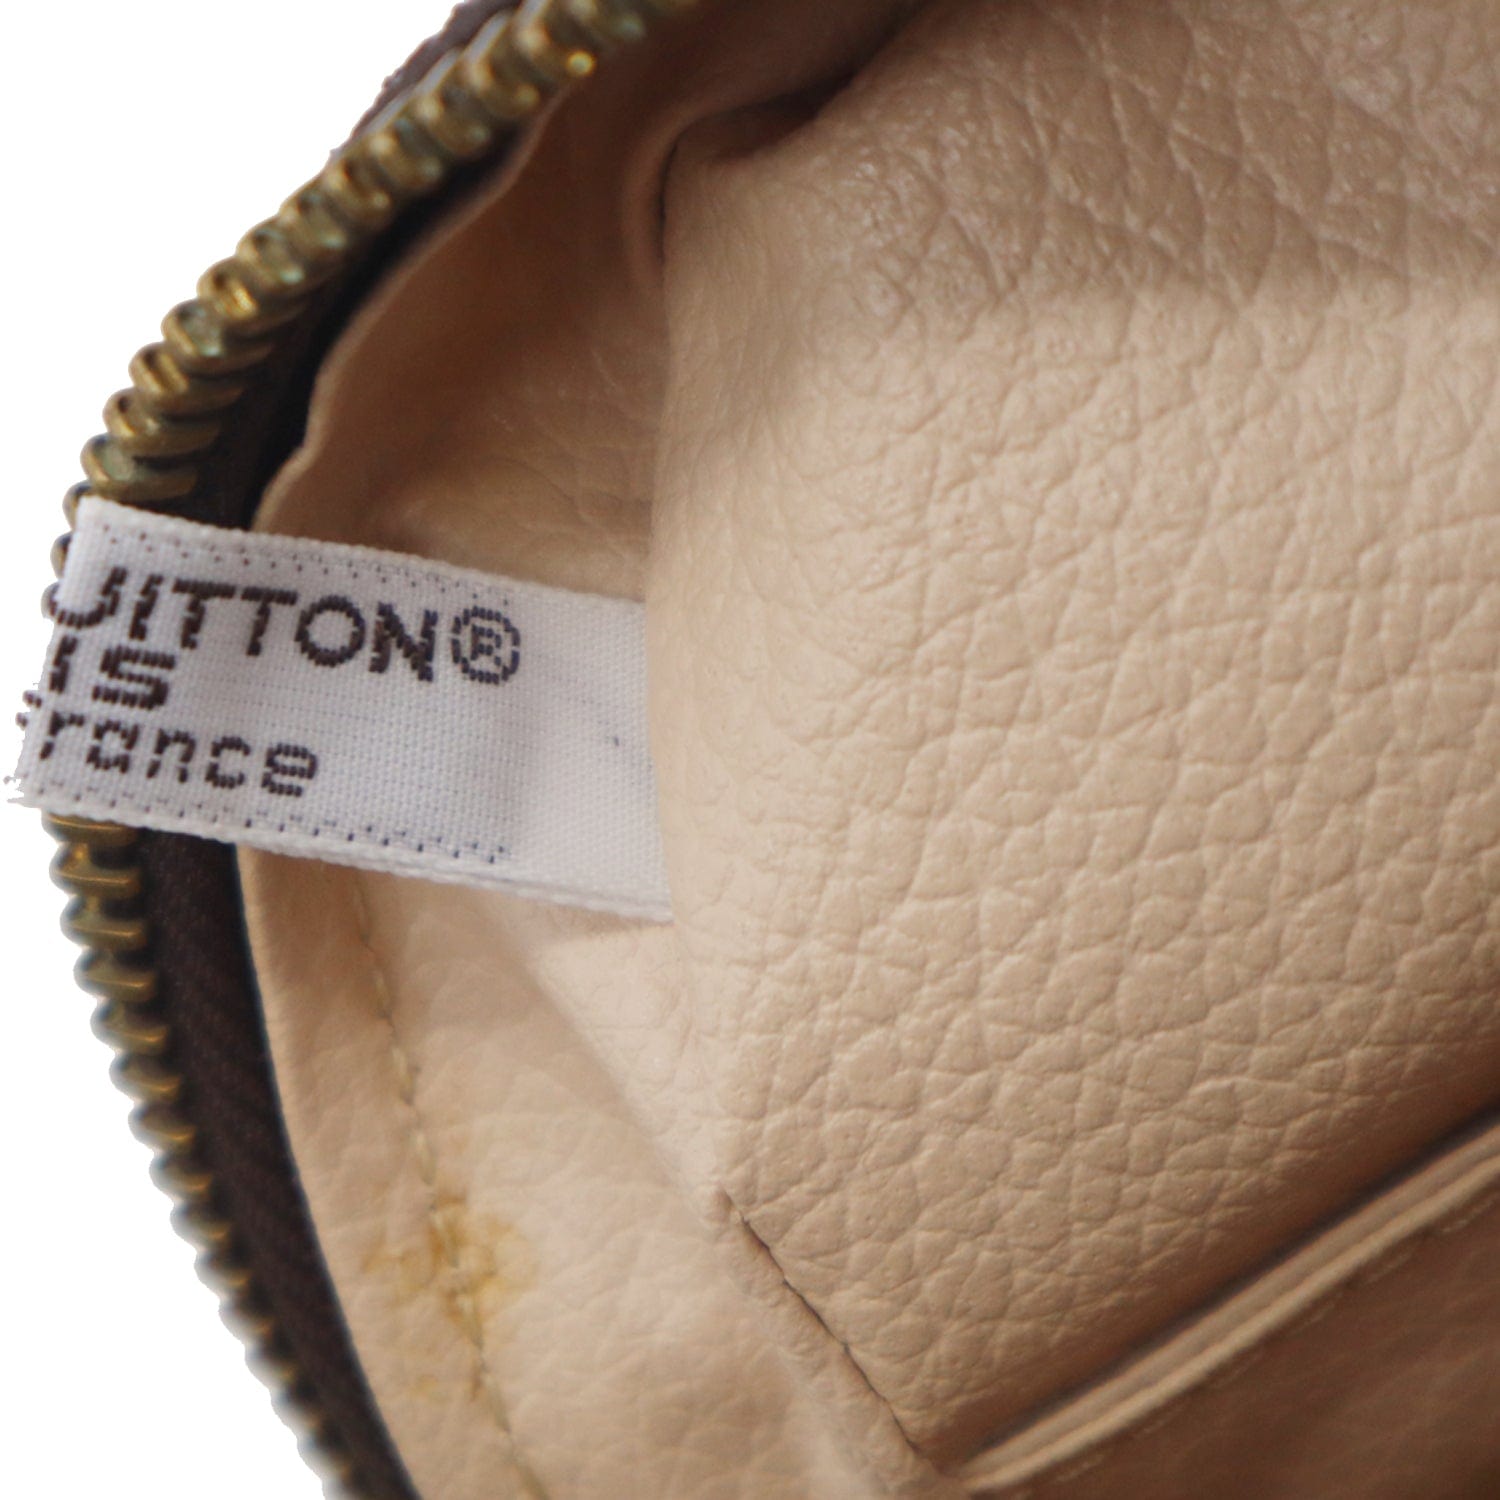 Trousse de toilette leather vanity case Louis Vuitton Brown in Leather -  31924925